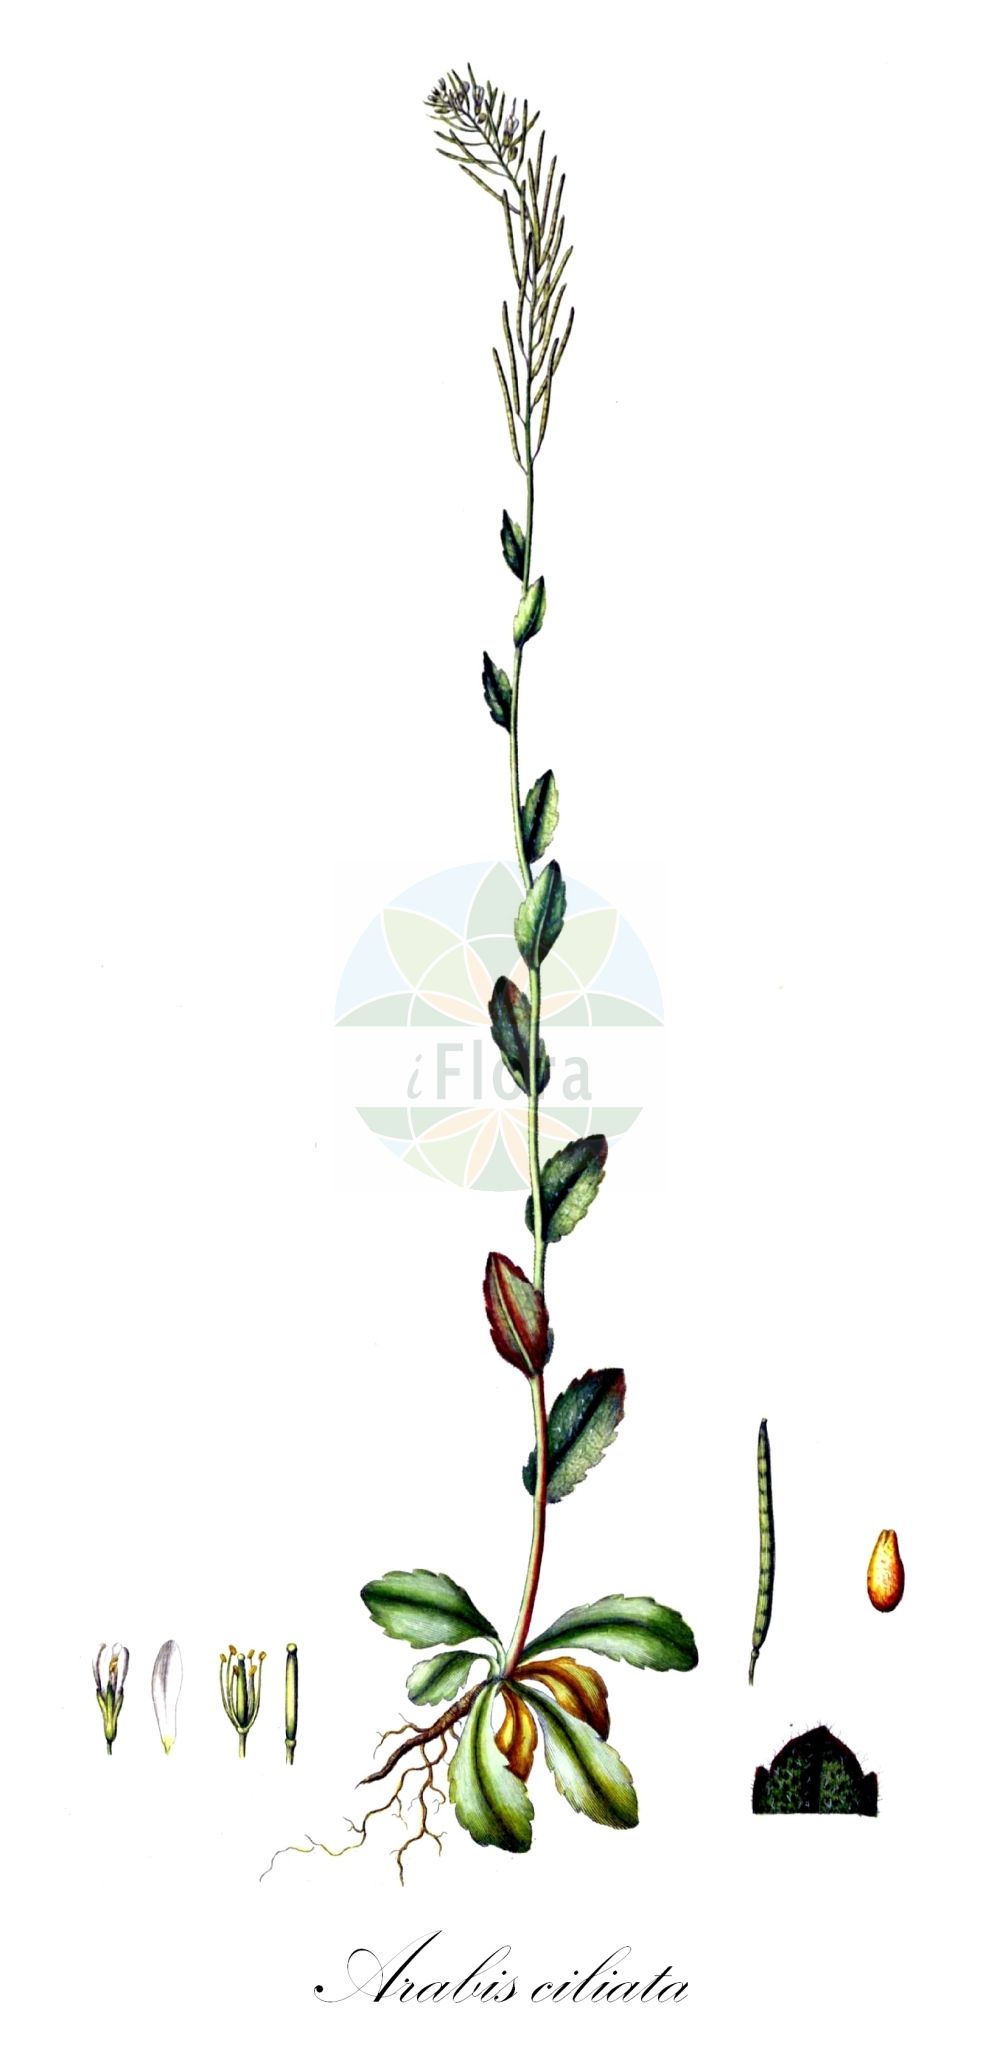 Historische Abbildung von Arabis ciliata (Doldige Gänsekresse - Corymbose Rockcress). Das Bild zeigt Blatt, Bluete, Frucht und Same. ---- Historical Drawing of Arabis ciliata (Doldige Gänsekresse - Corymbose Rockcress). The image is showing leaf, flower, fruit and seed.(Arabis ciliata,Doldige Gänsekresse,Corymbose Rockcress,Arabis arcuata,Arabis ciliata,Arabis corymbiflora,Dollineria ciliata,Doldige Gaensekresse,Corymbose Rockcress,Arabis,Gänsekresse,Rockcress,Brassicaceae,Kreuzblütler,Cabbage family,Blatt,Bluete,Frucht,Same,leaf,flower,fruit,seed,Oeder (1761-1883))